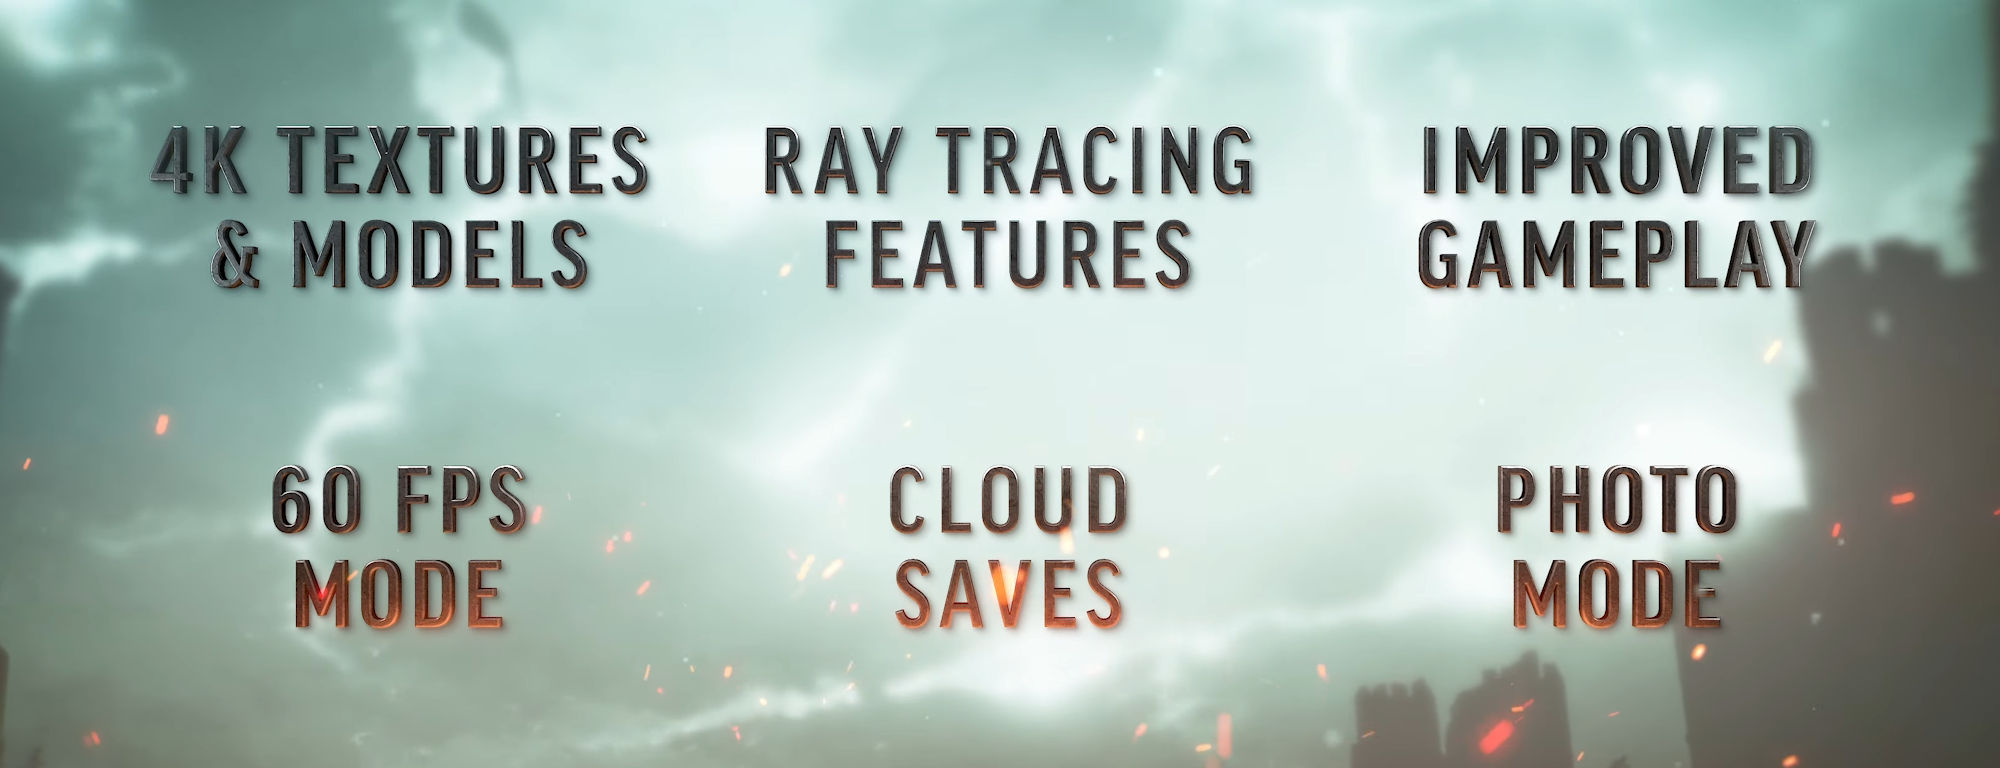 The Witcher 3 Next-Gen transforma o game com melhores texturas, Ray  Tracing, DLSS e FSR 2